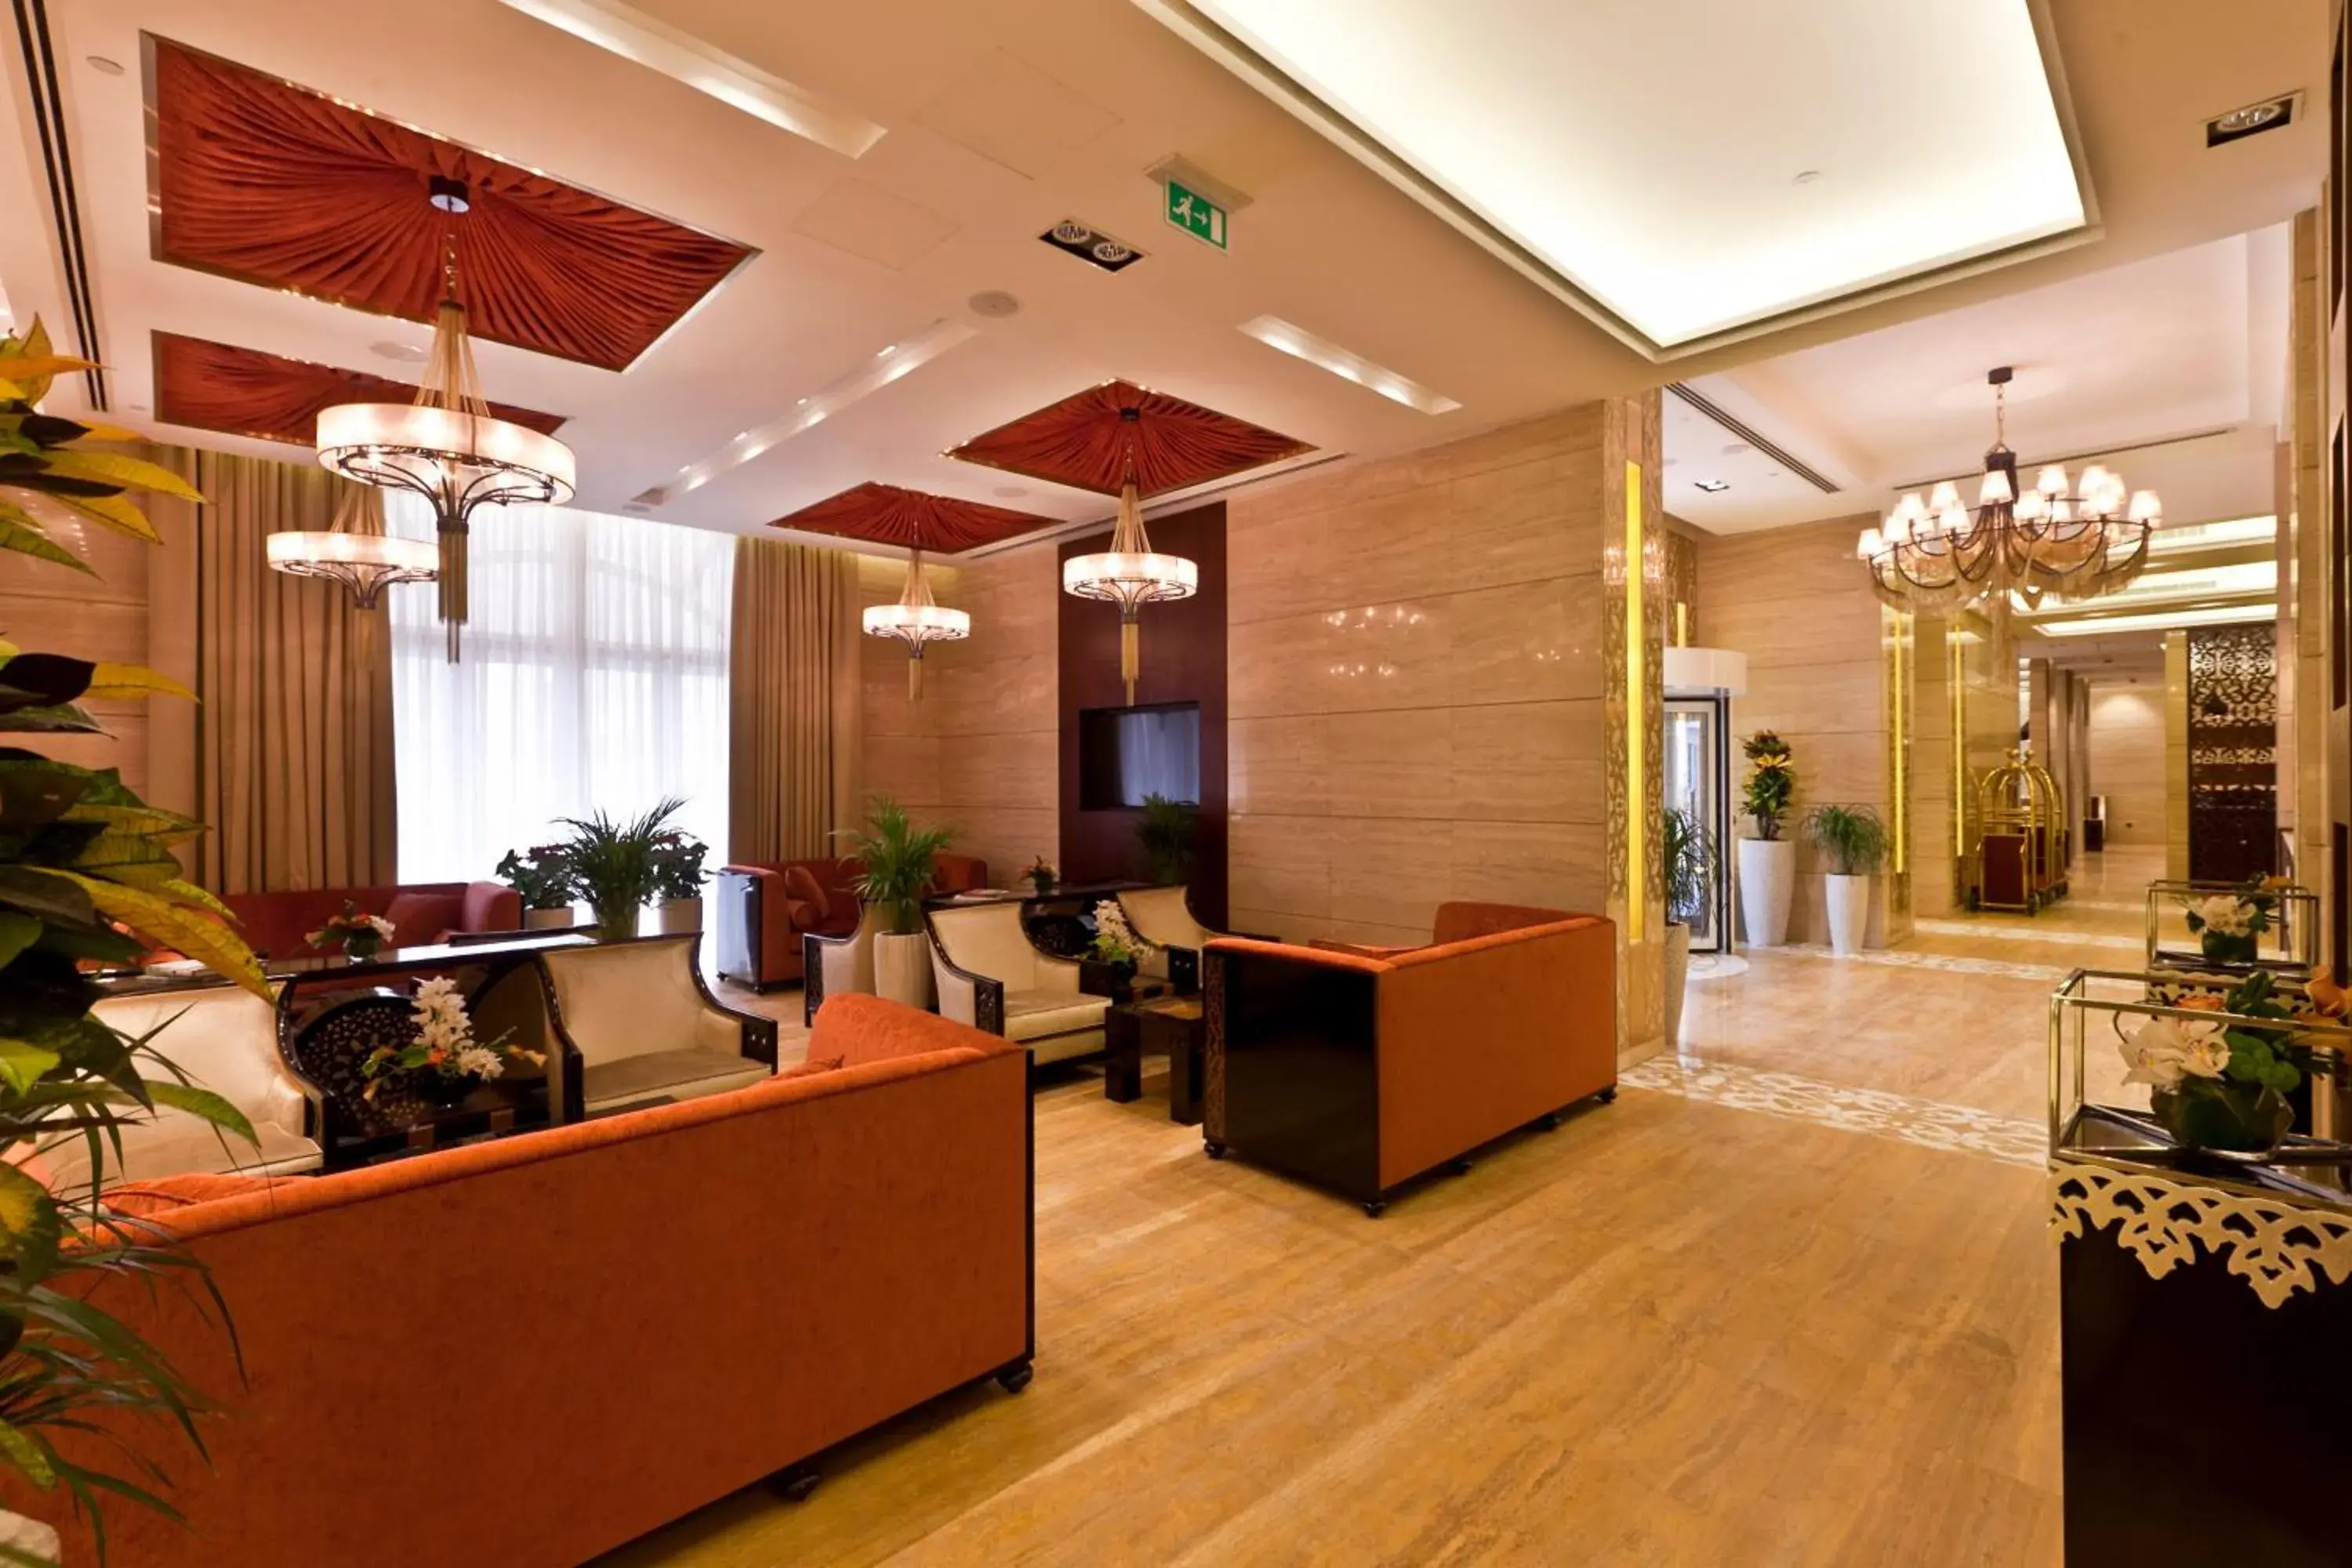 Lobby or reception, Lobby/Reception in Zubarah Hotel